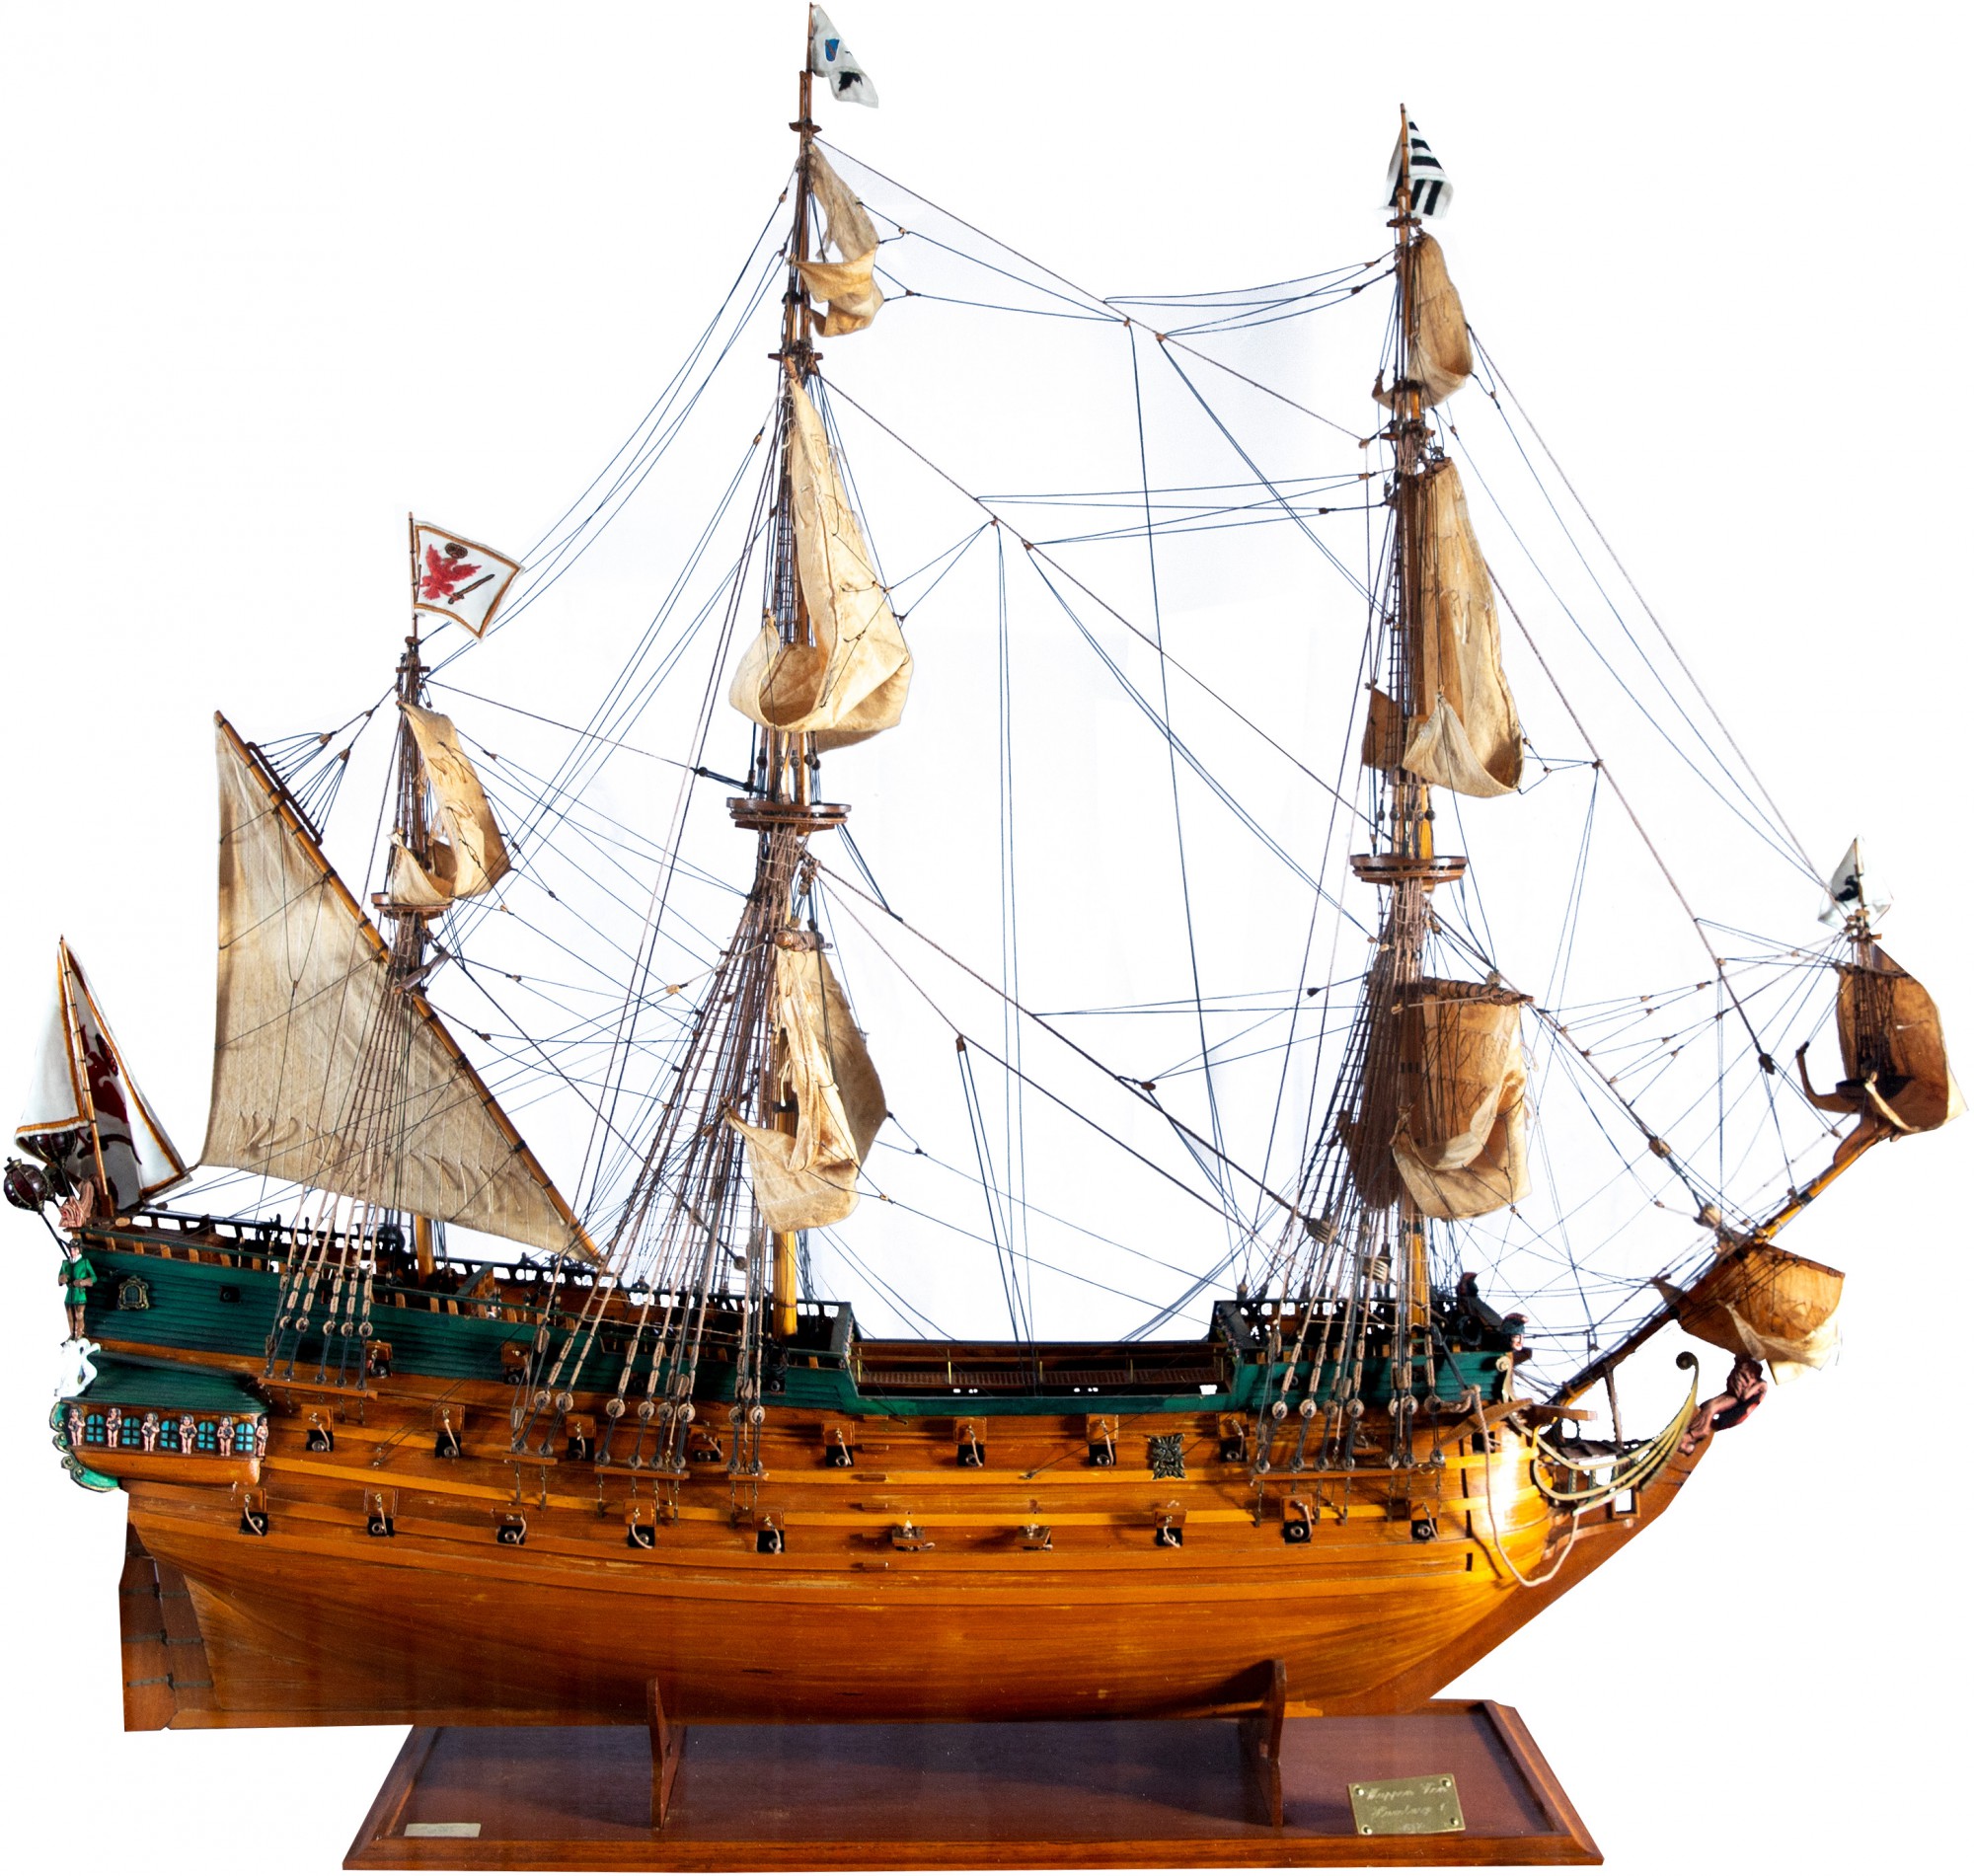 Modelo Naval - Caravela